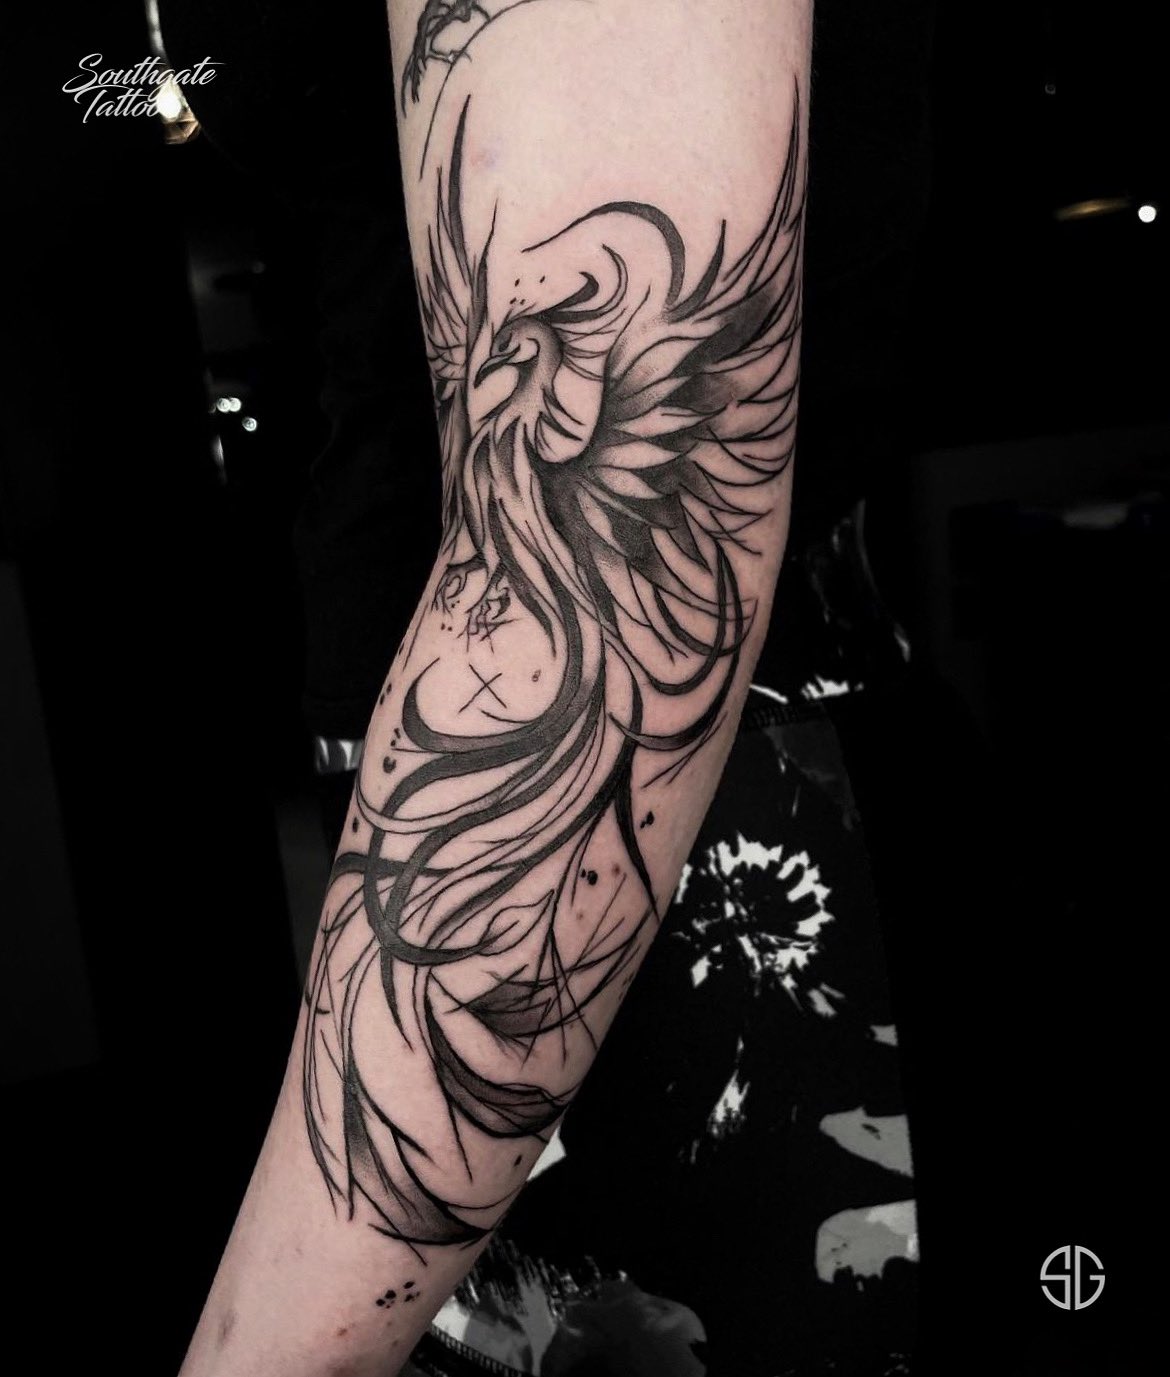 Quickstart ideas for a forearm phoenix tattoo